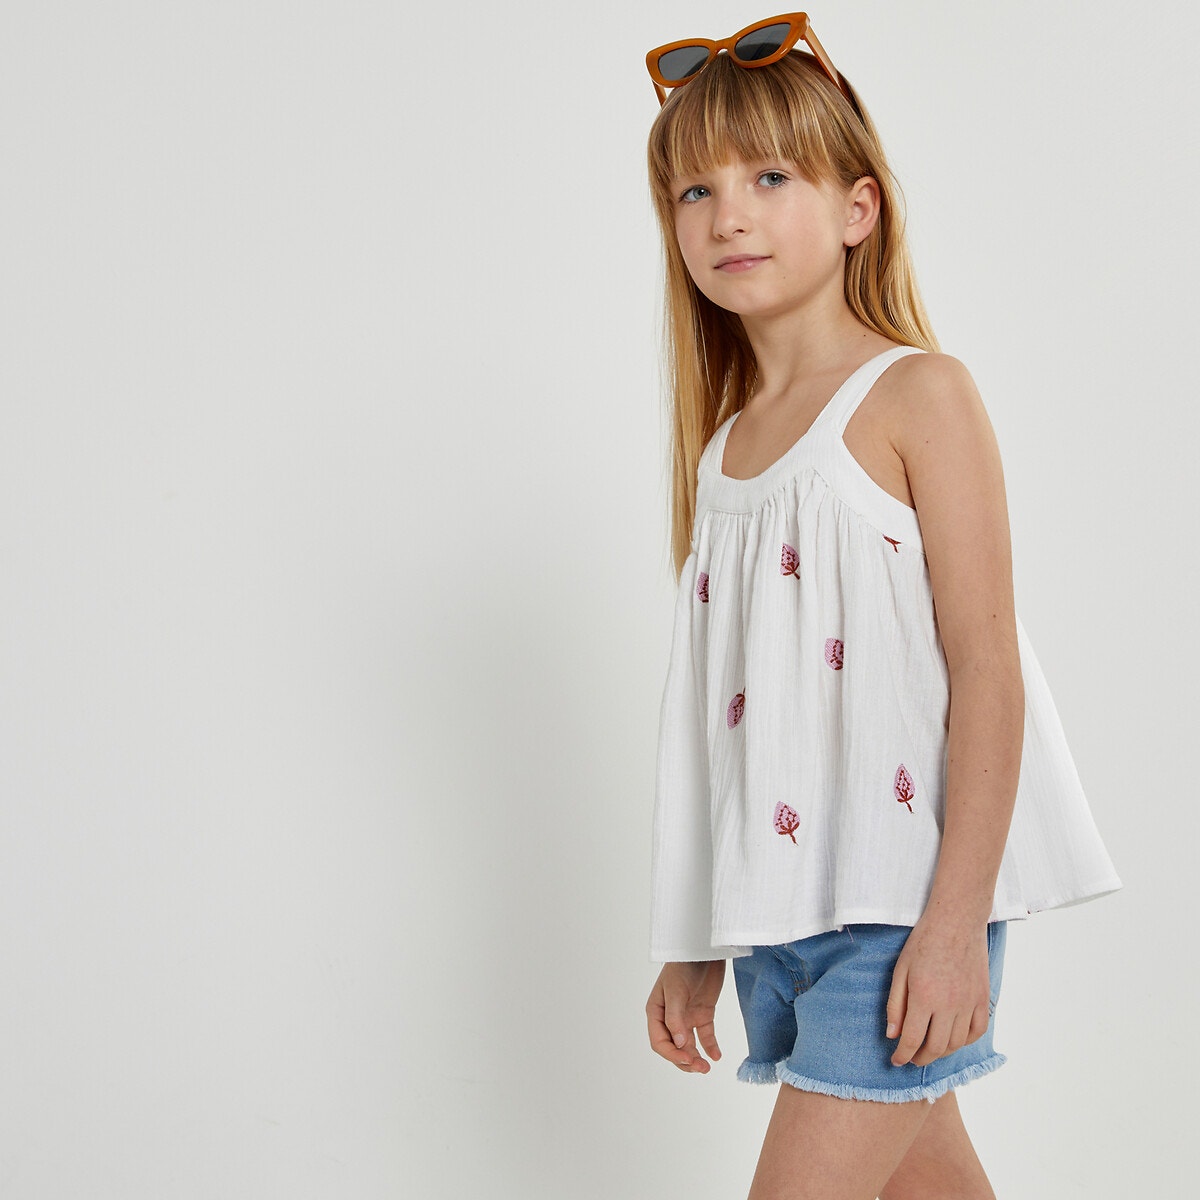 Μόδα > Παιδικά > Κορίτσι > Μπλούζες, πουκάμισα Μπλούζα με τιράντες και κεντημένες φράουλες